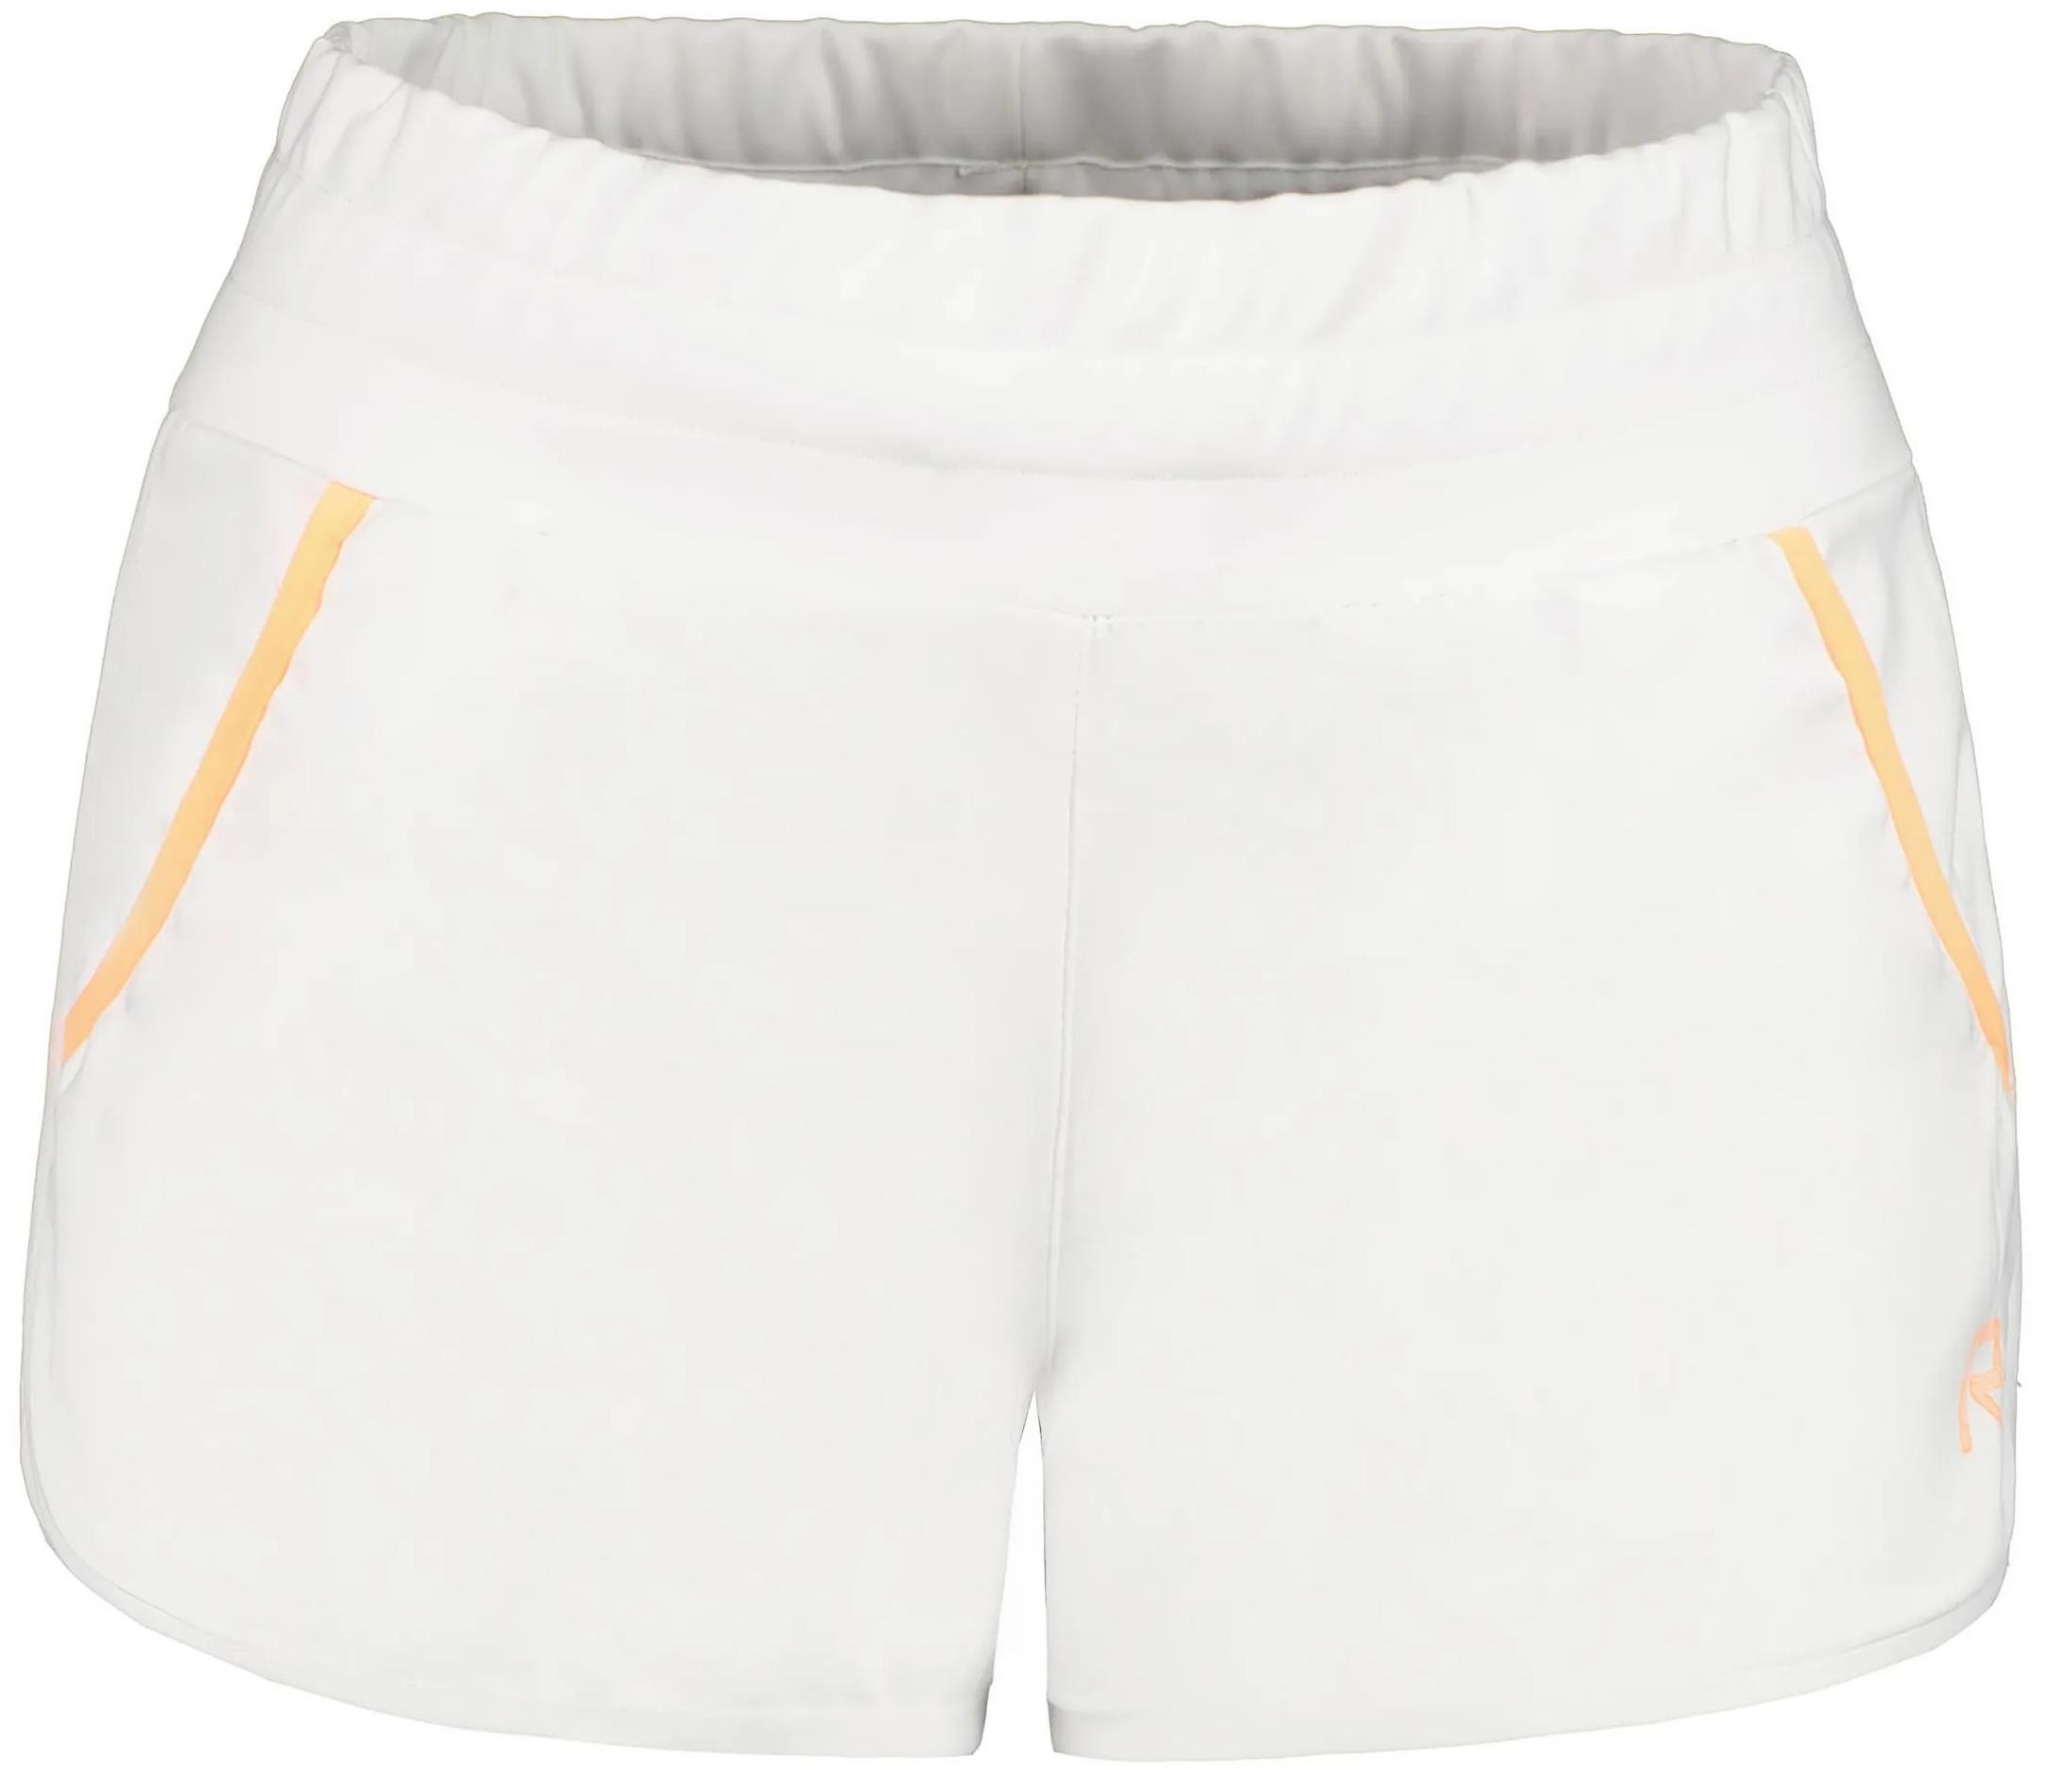 Cпортивные шорты женские Rukka Ylisoke белые 34